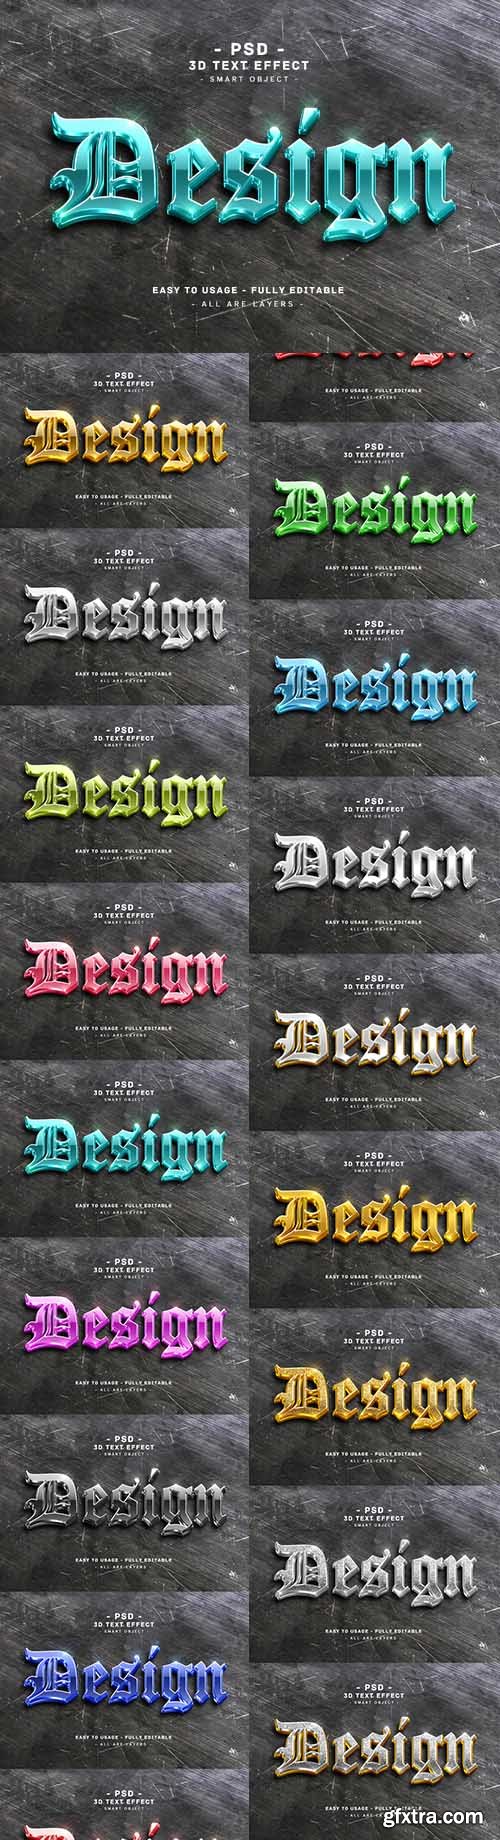 Design 3d blue text style effect